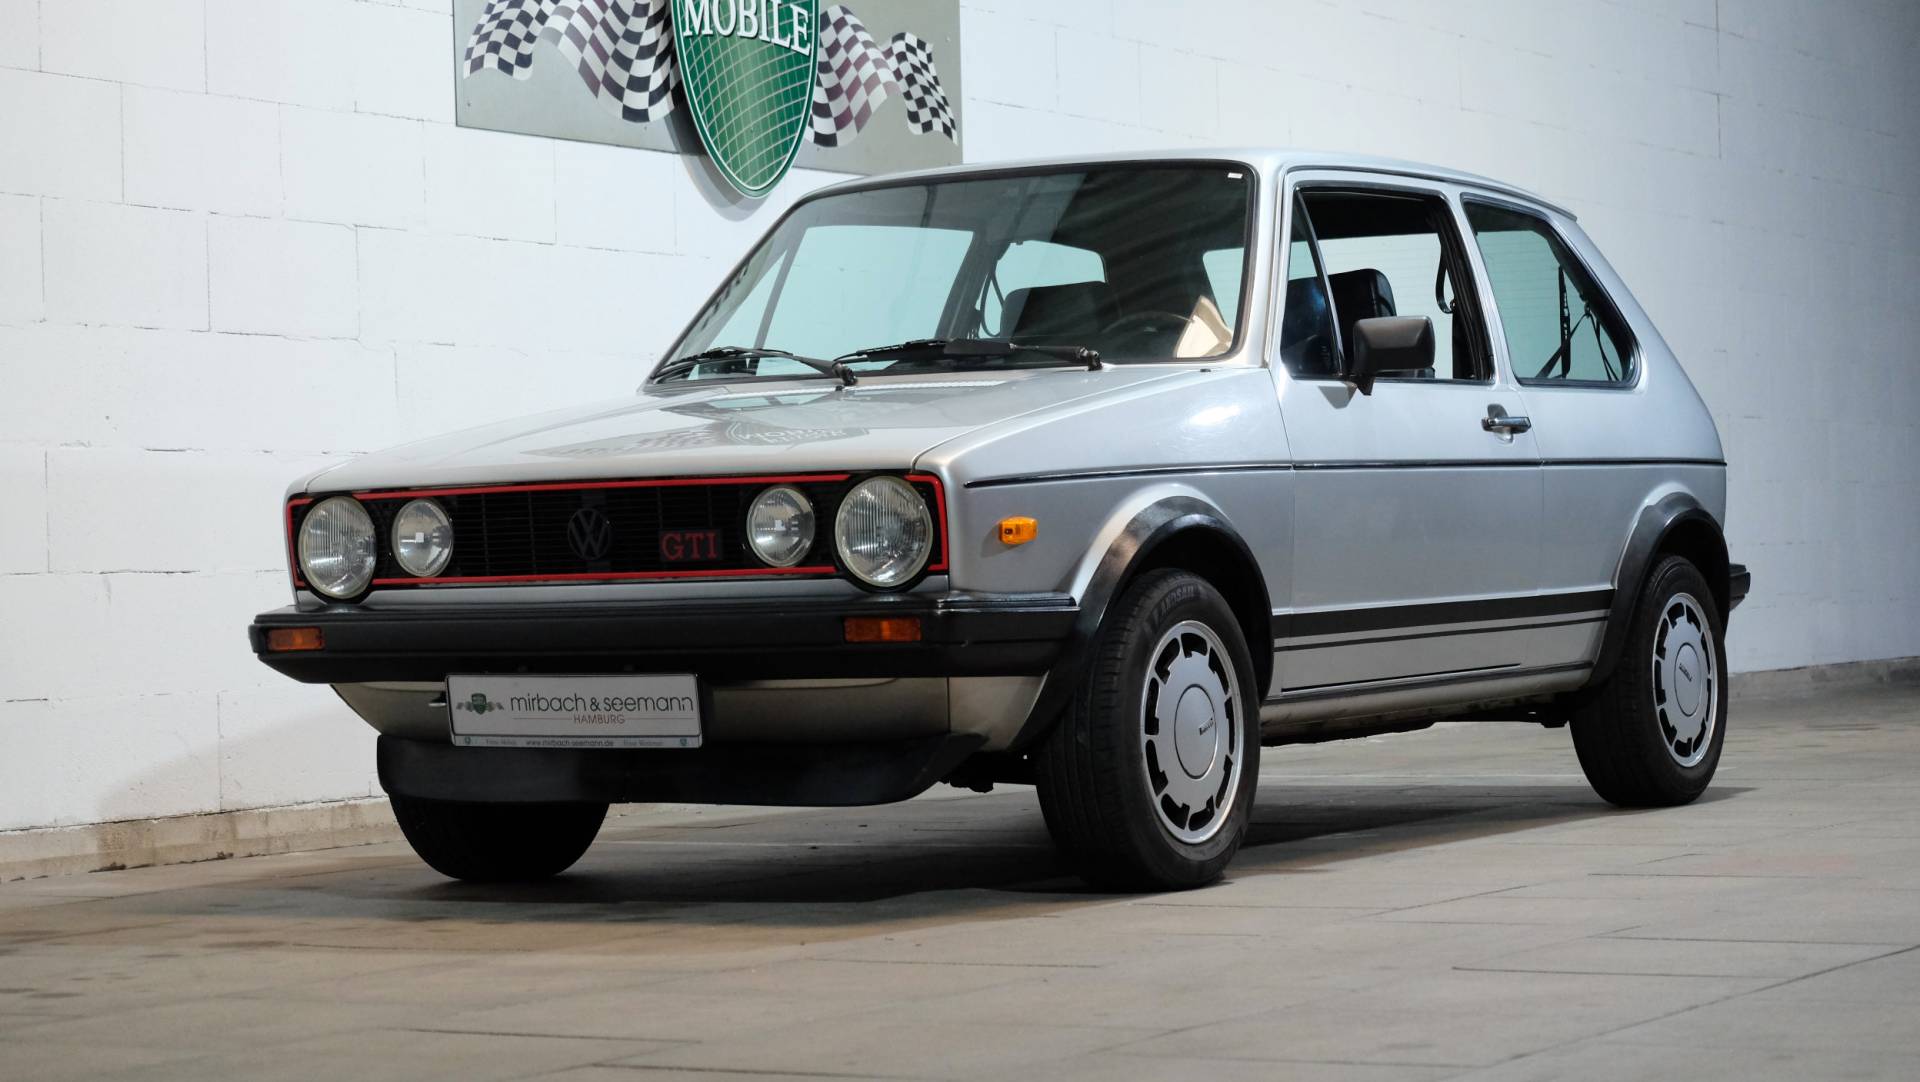 jurk orgaan Kakadu Te koop: Volkswagen Golf I GTI 1.6 (1981) aangeboden voor € 23.900